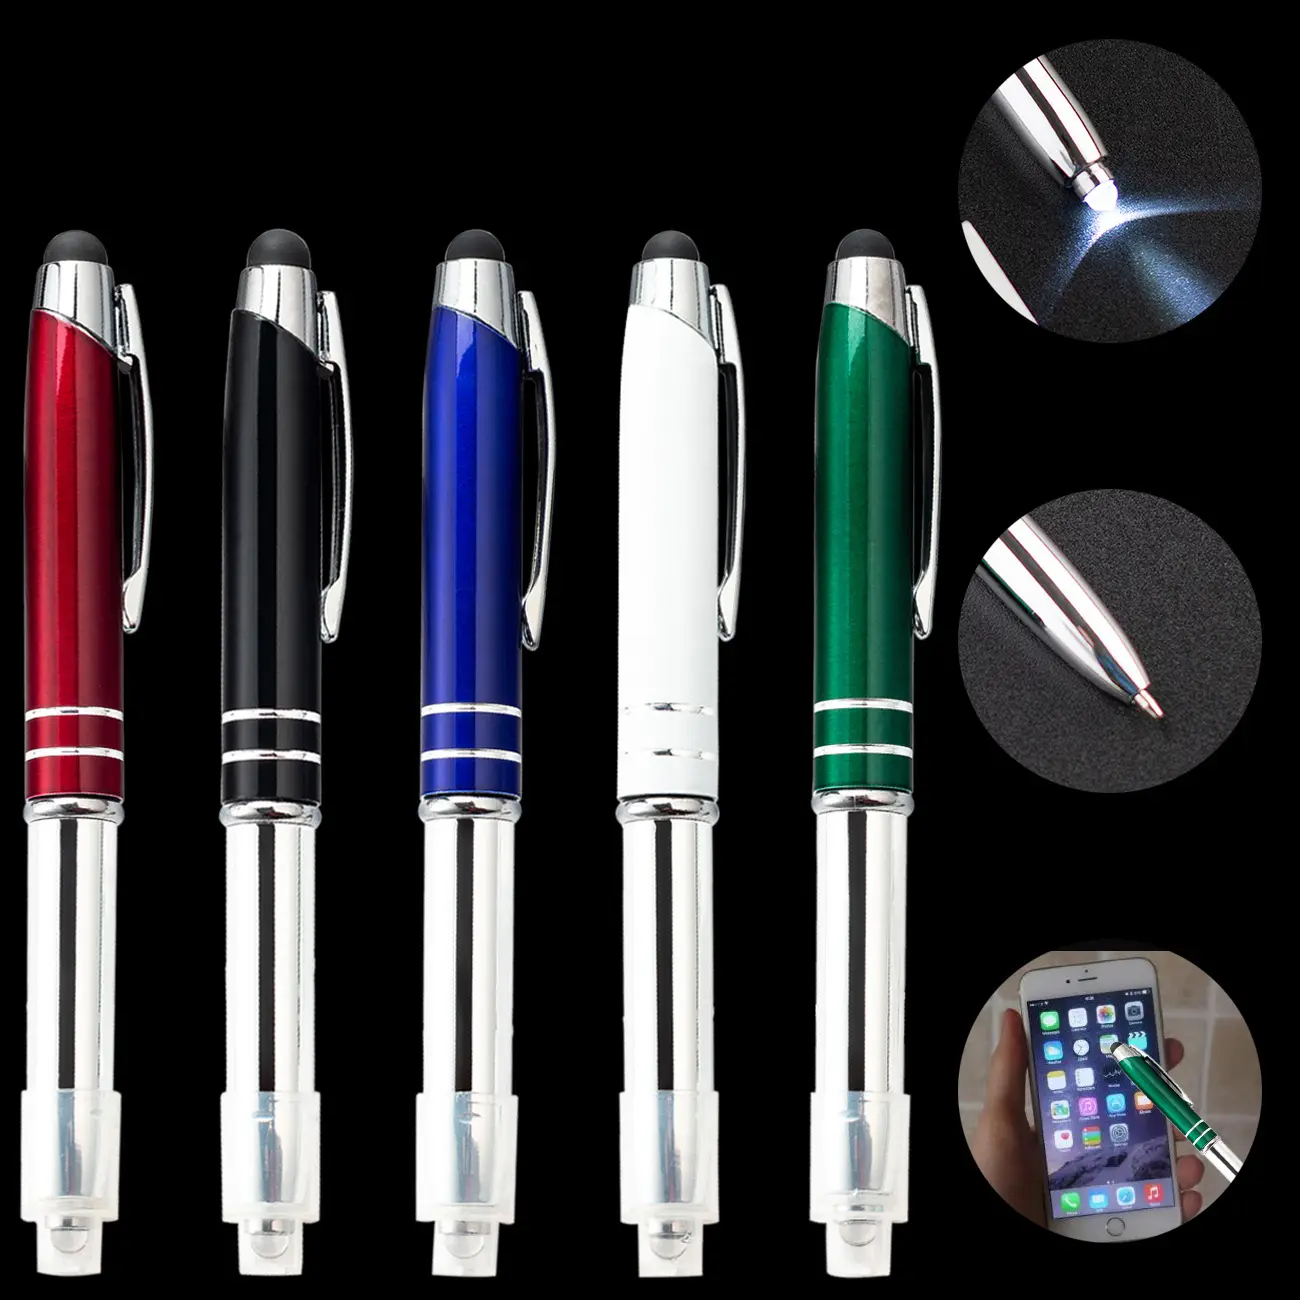 قلم حبر جاف مضيء MP-116 بشعار مخصص وضوء LED بسعر الجملة بشاشة تعمل باللمس ثلاثة في واحد